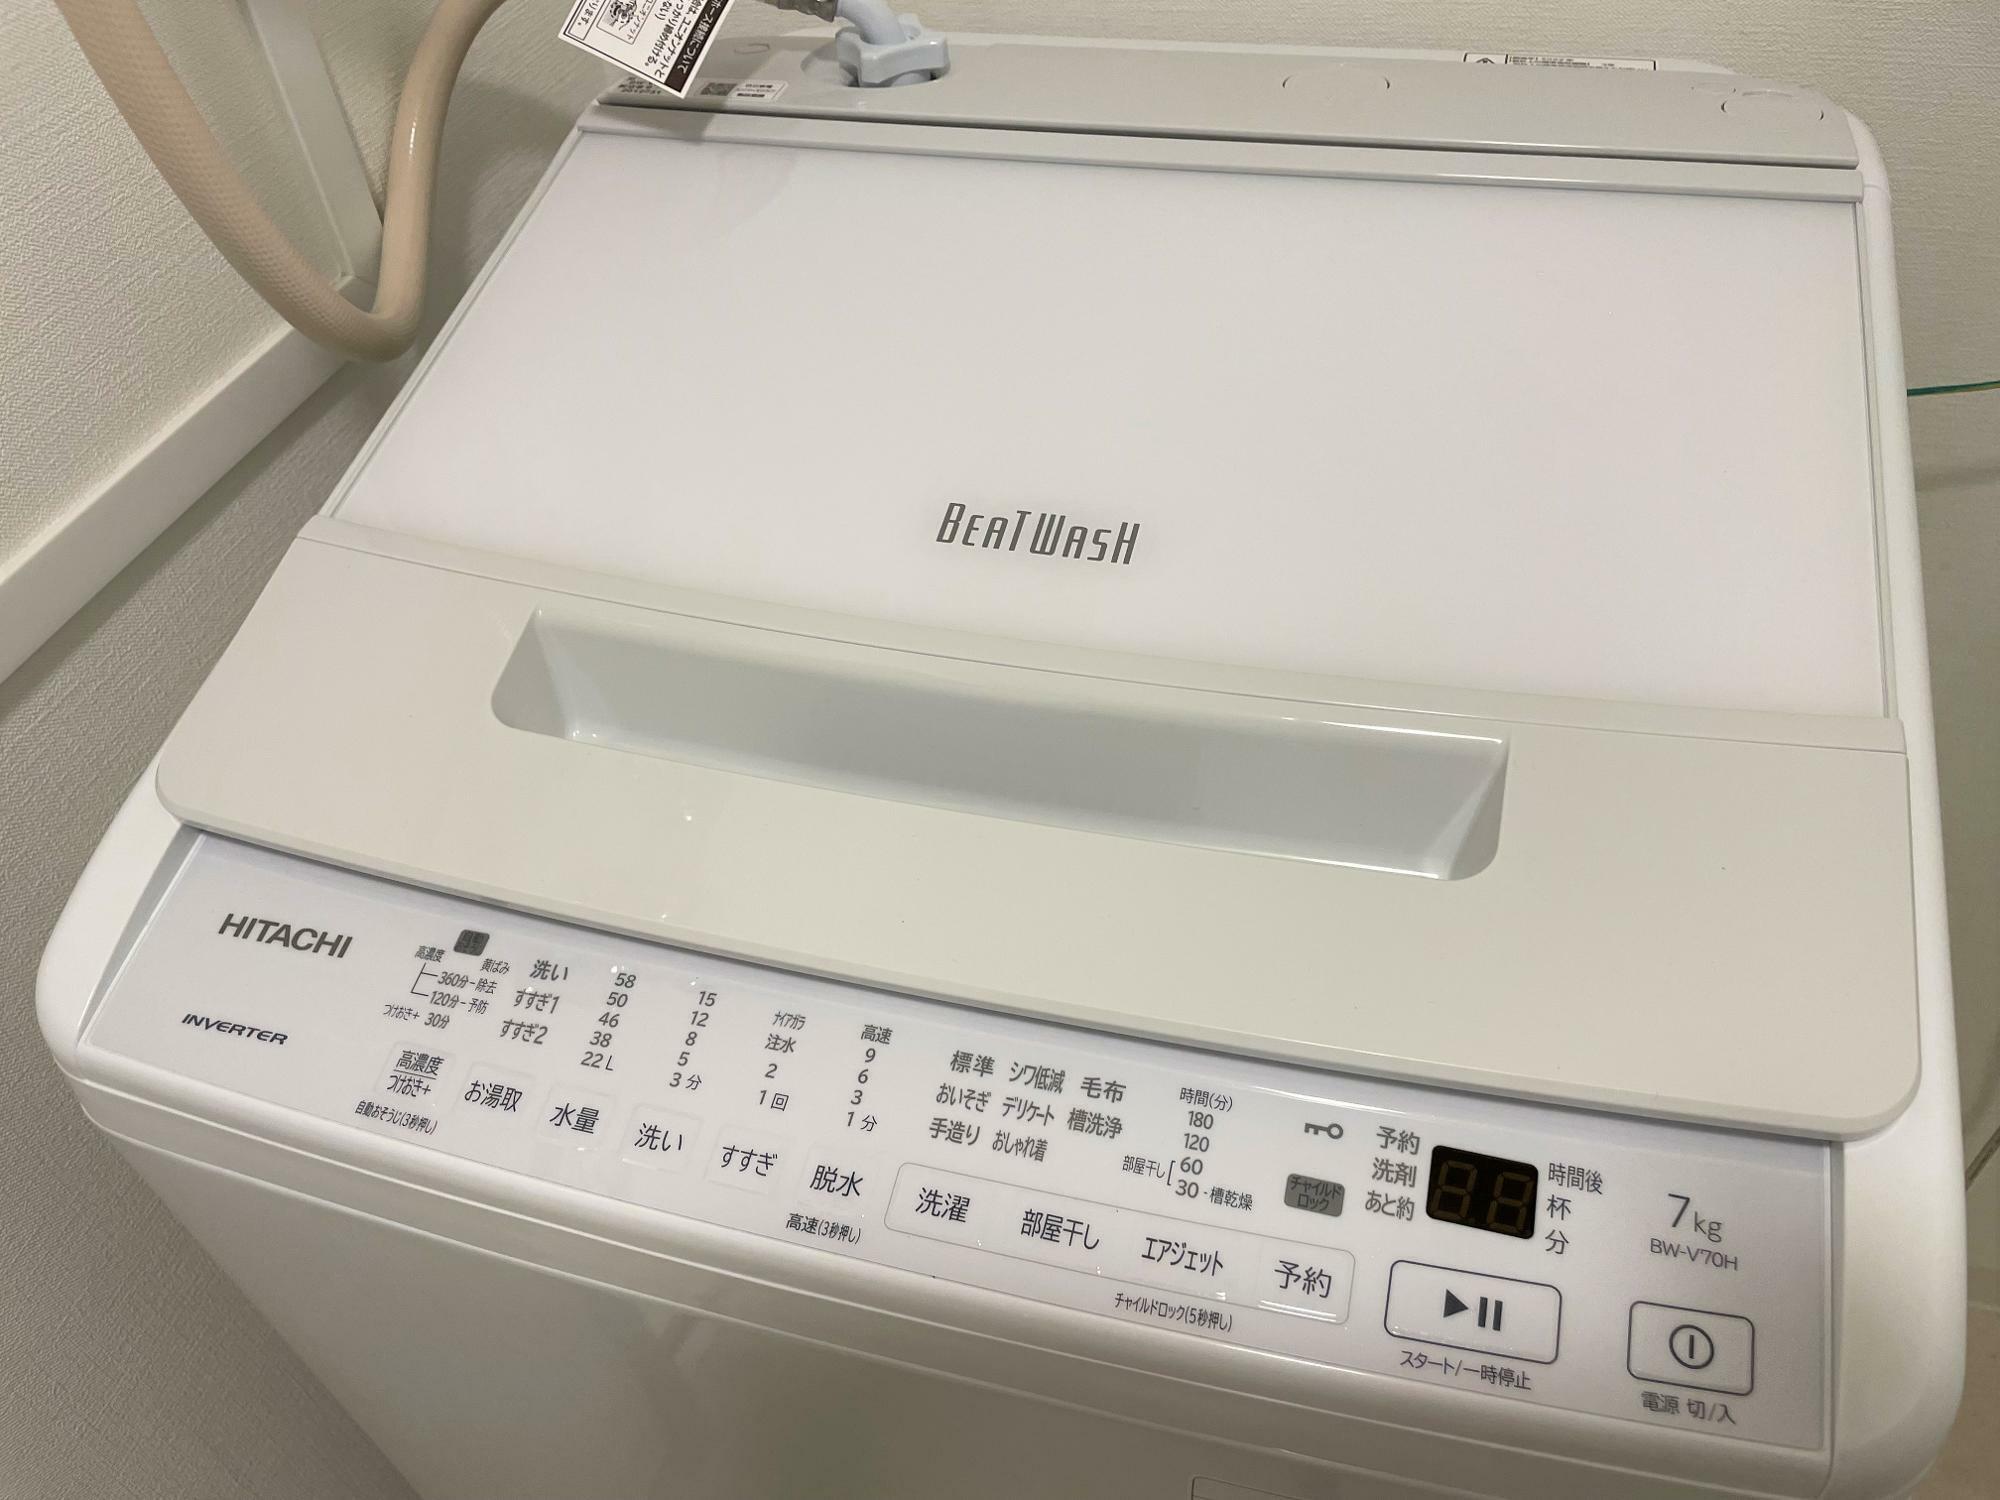 HITACHI beat wash 8㌔エアジェット乾燥洗濯機 - 生活家電